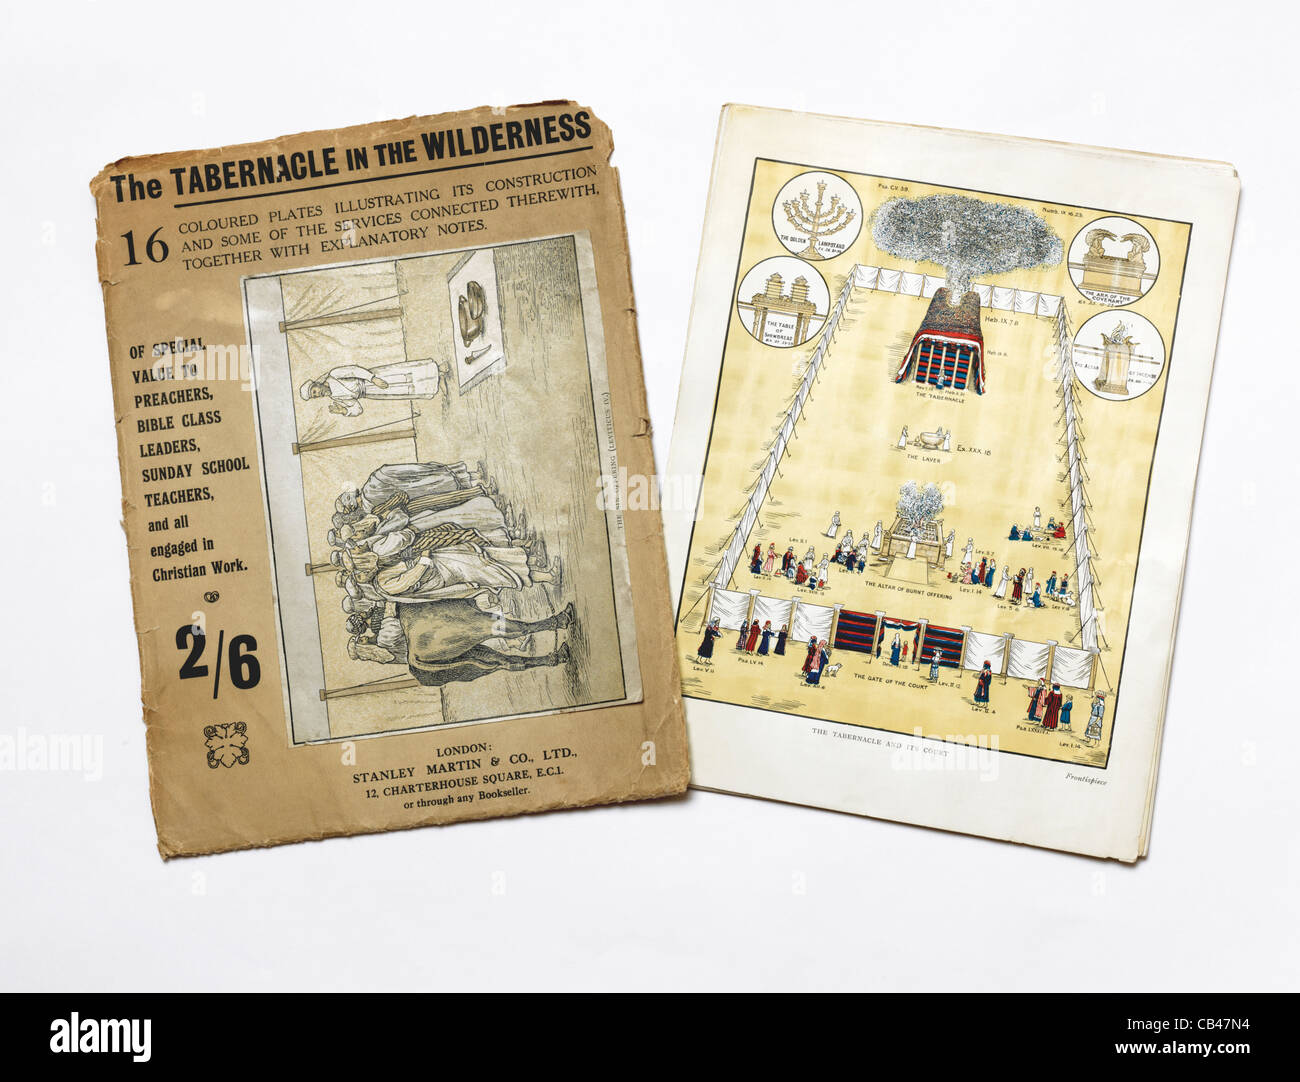 Le Tabernacle dans le désert couvrir avec une illustration de l'offrande et une plaque illustrant le Tabernacle et ses Cou Banque D'Images